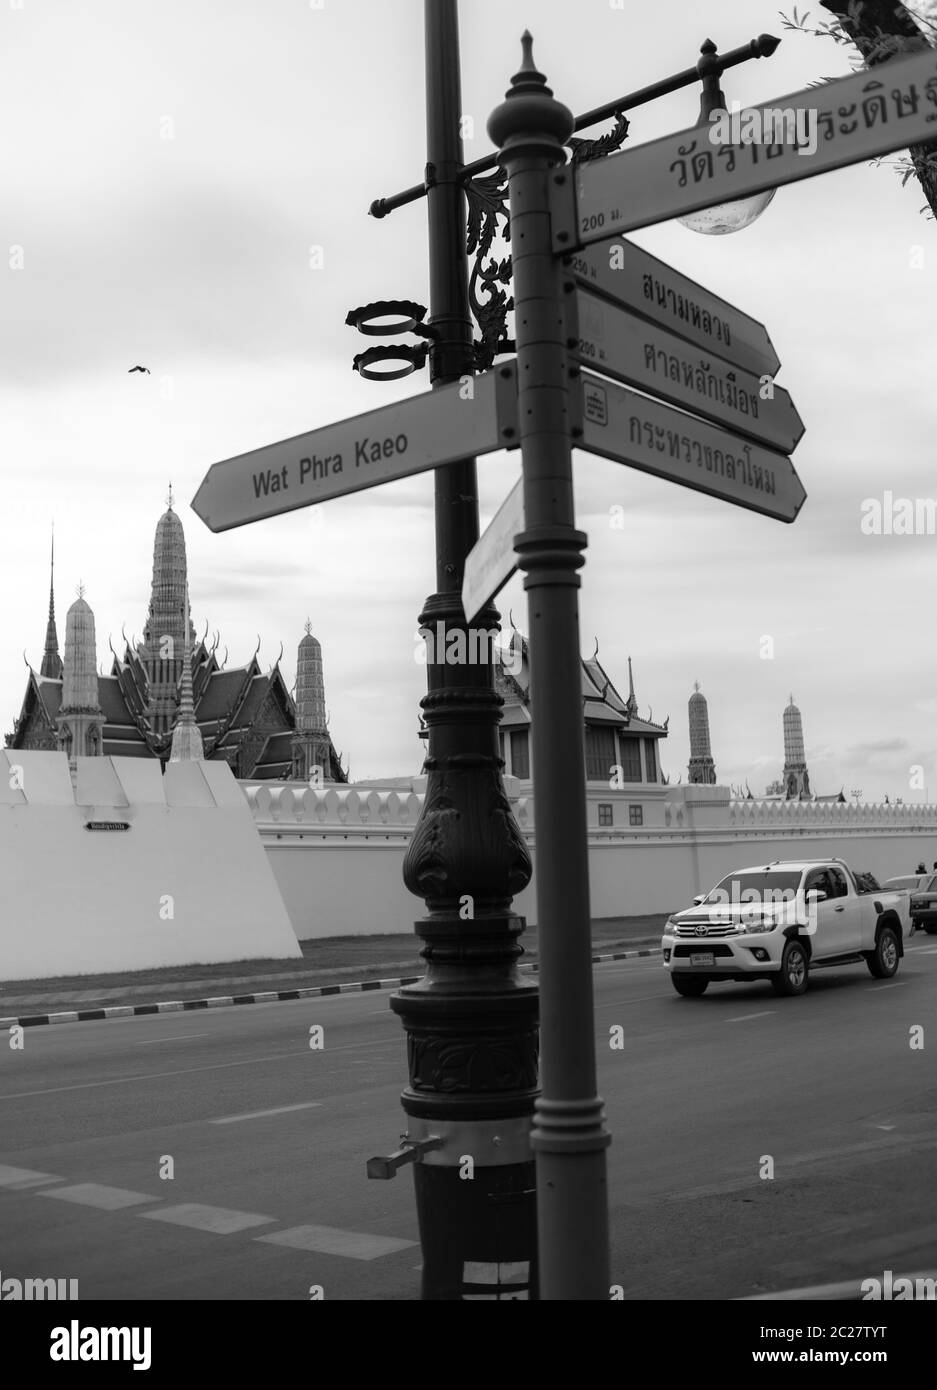 Un lieu direction flèche à proximité de Grand Palais Royal, Bangkok Thaïlande Banque D'Images